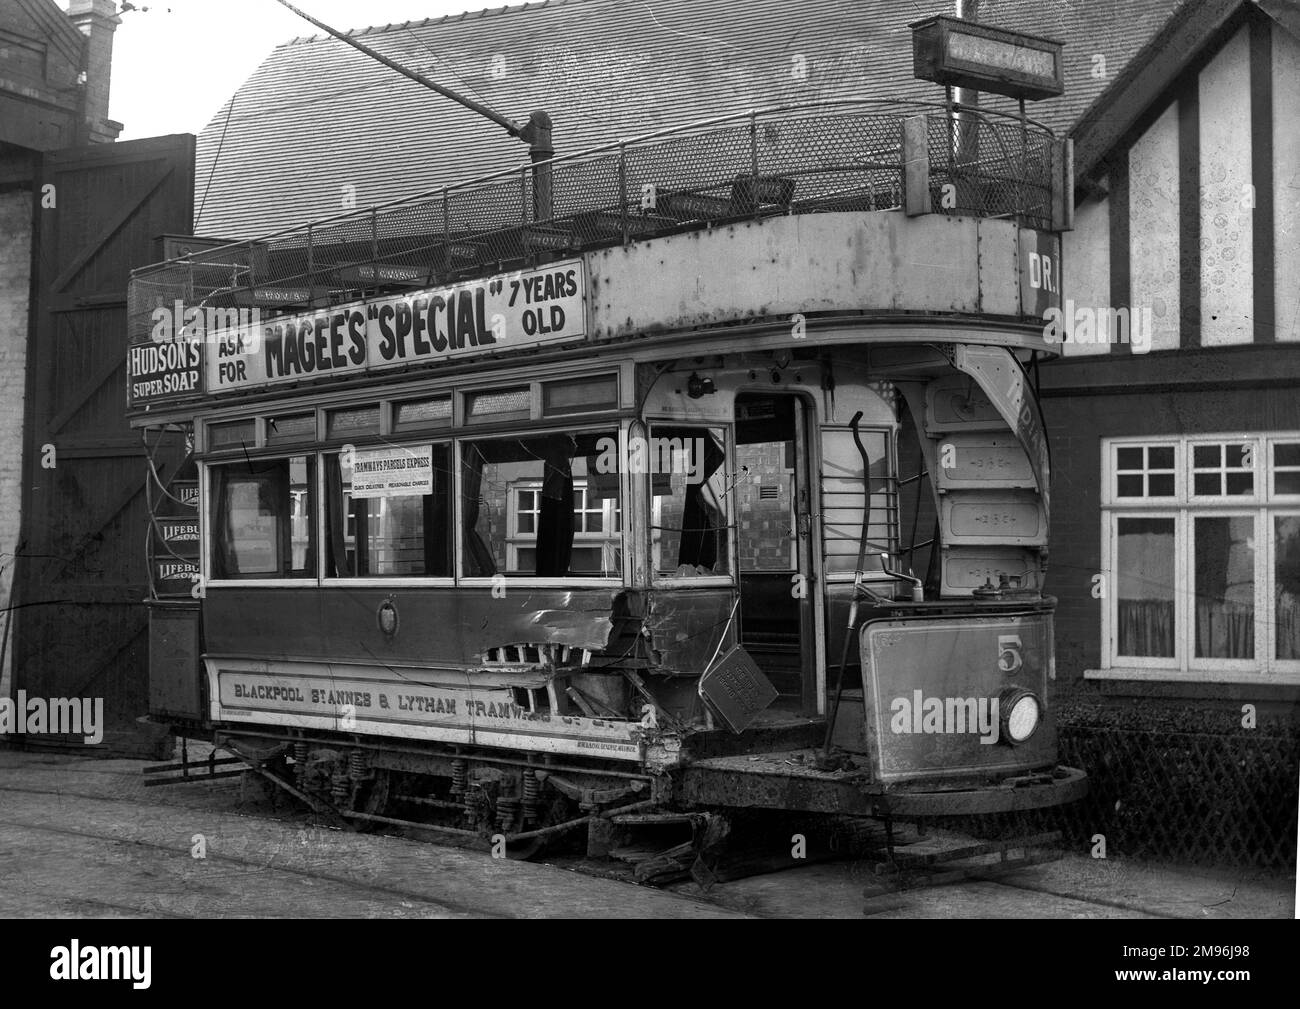 Eine stillgelegte Straßenbahn der Blackpool St. Annes & Lytham Straßenbahnen, beschädigt und rostet im Freien. Es enthält immer noch Werbung für Hovis, Lifebuoy Soap, Hudson's Super Soap und Magee's Special (wahrscheinlich eine Whiskymarke). Stockfoto